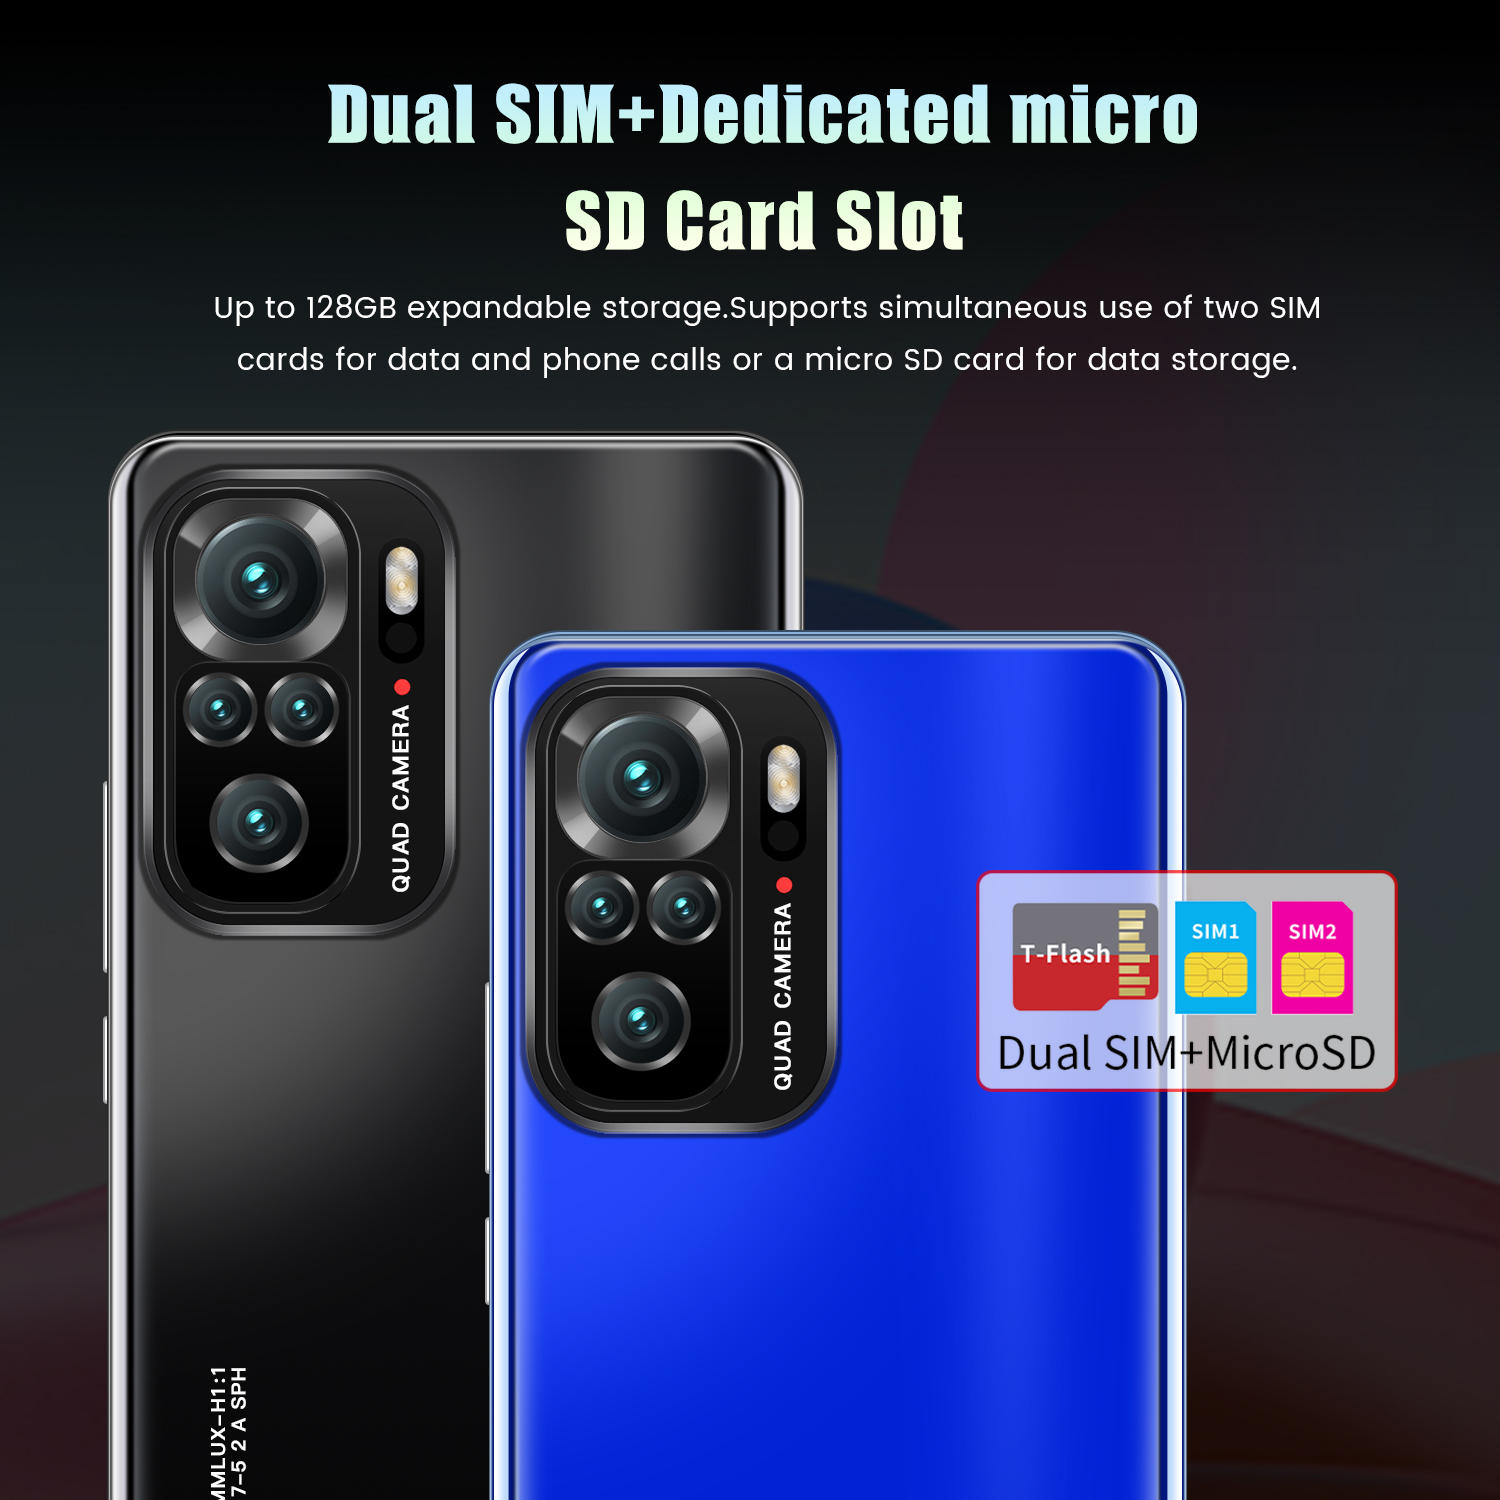 ภาพประกอบคำอธิบาย Note10max โทรศัพท์ราคาถูก สมาร์ทโฟนหน่วยความจำ 12G+512G จอ 6.3นิ้ว HD แบตเตอรี่ 4800 mAh ถ่ายภาพ ชมภาพยนต์ เกม ข้อเสนอพิเศษ ประกันศูนย์ไทย 1 ป Smartphones